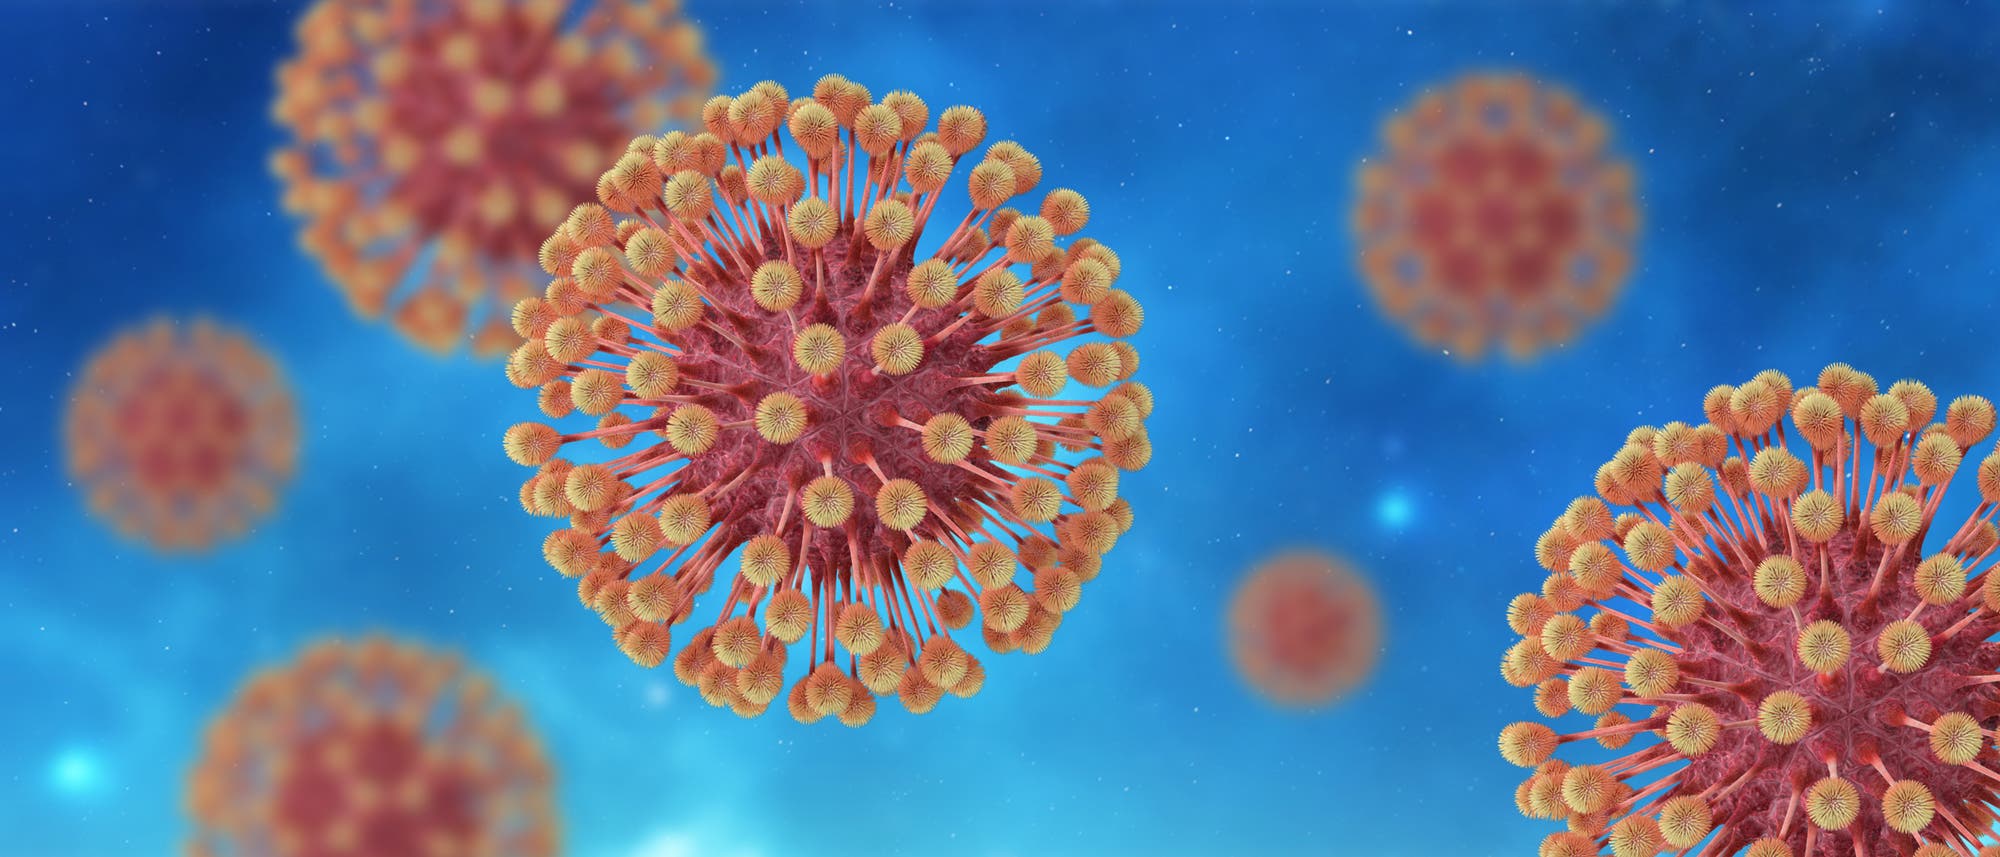 Diese Illustration zeigt ein Herpes simplex Virus, das in Rosatönen eingefärbt ist, der Hintergrund ist blau